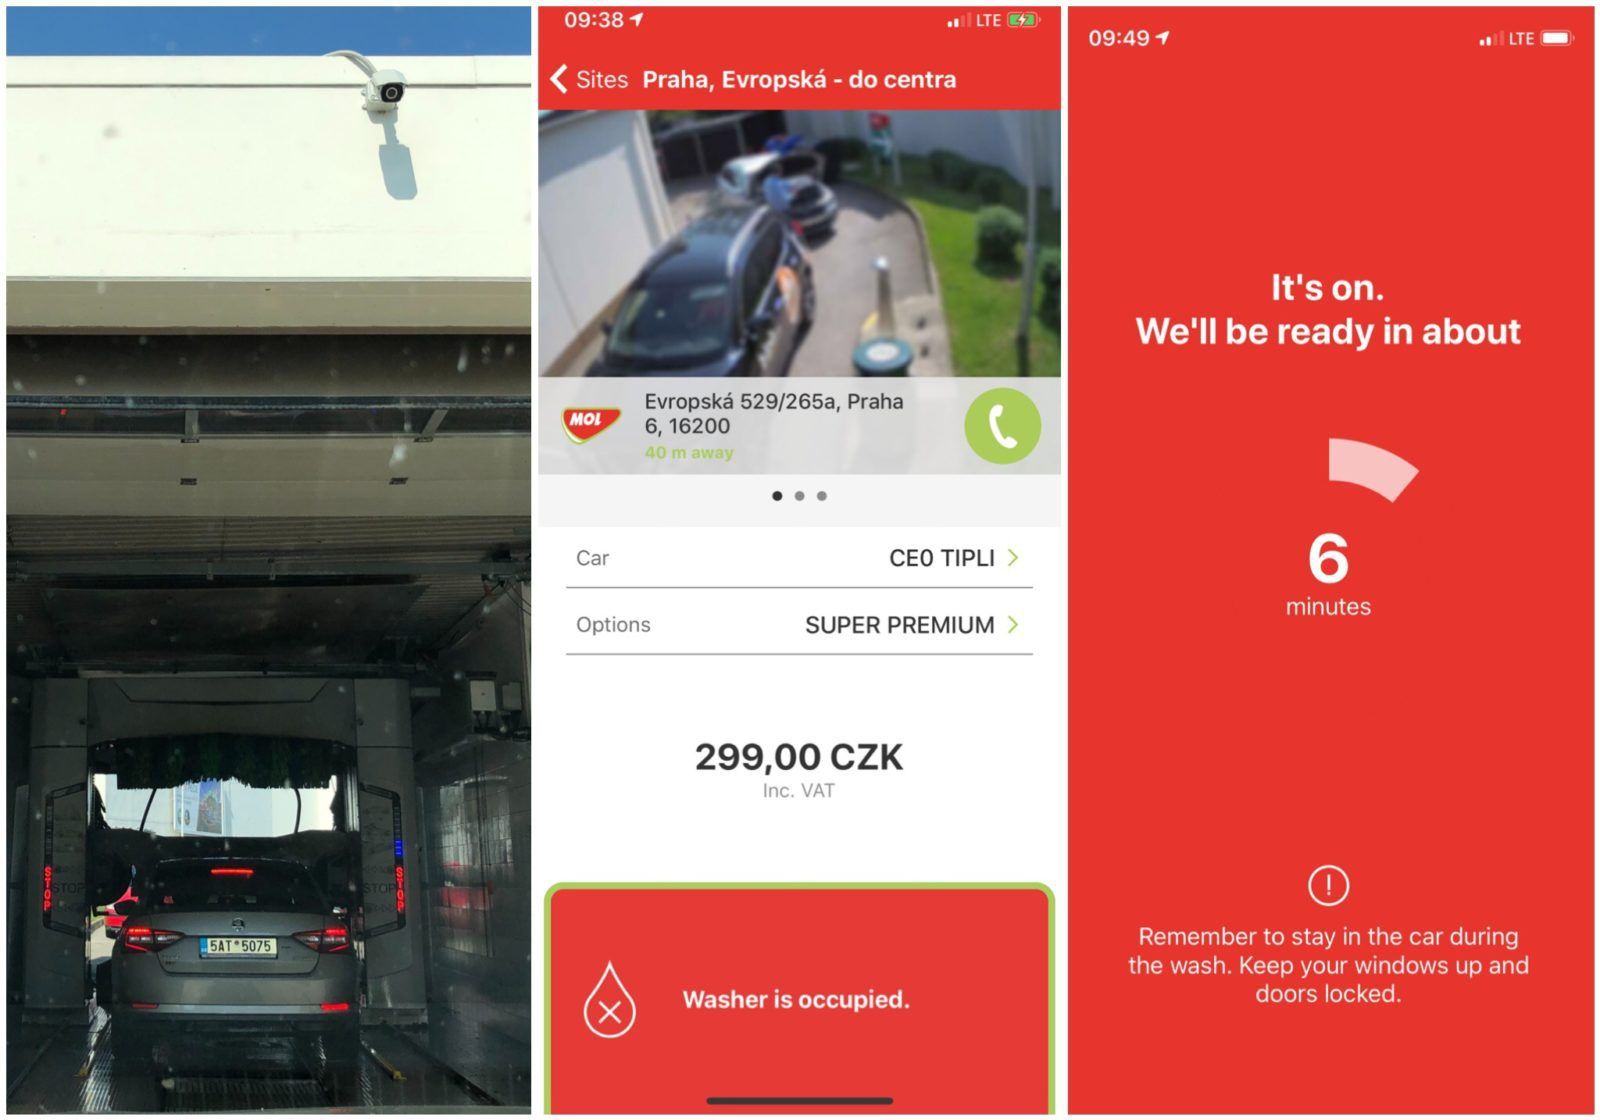 Čerpací stanice MOL – nabízí mytí auta přes mobil bez nutnosti vystoupit z auta